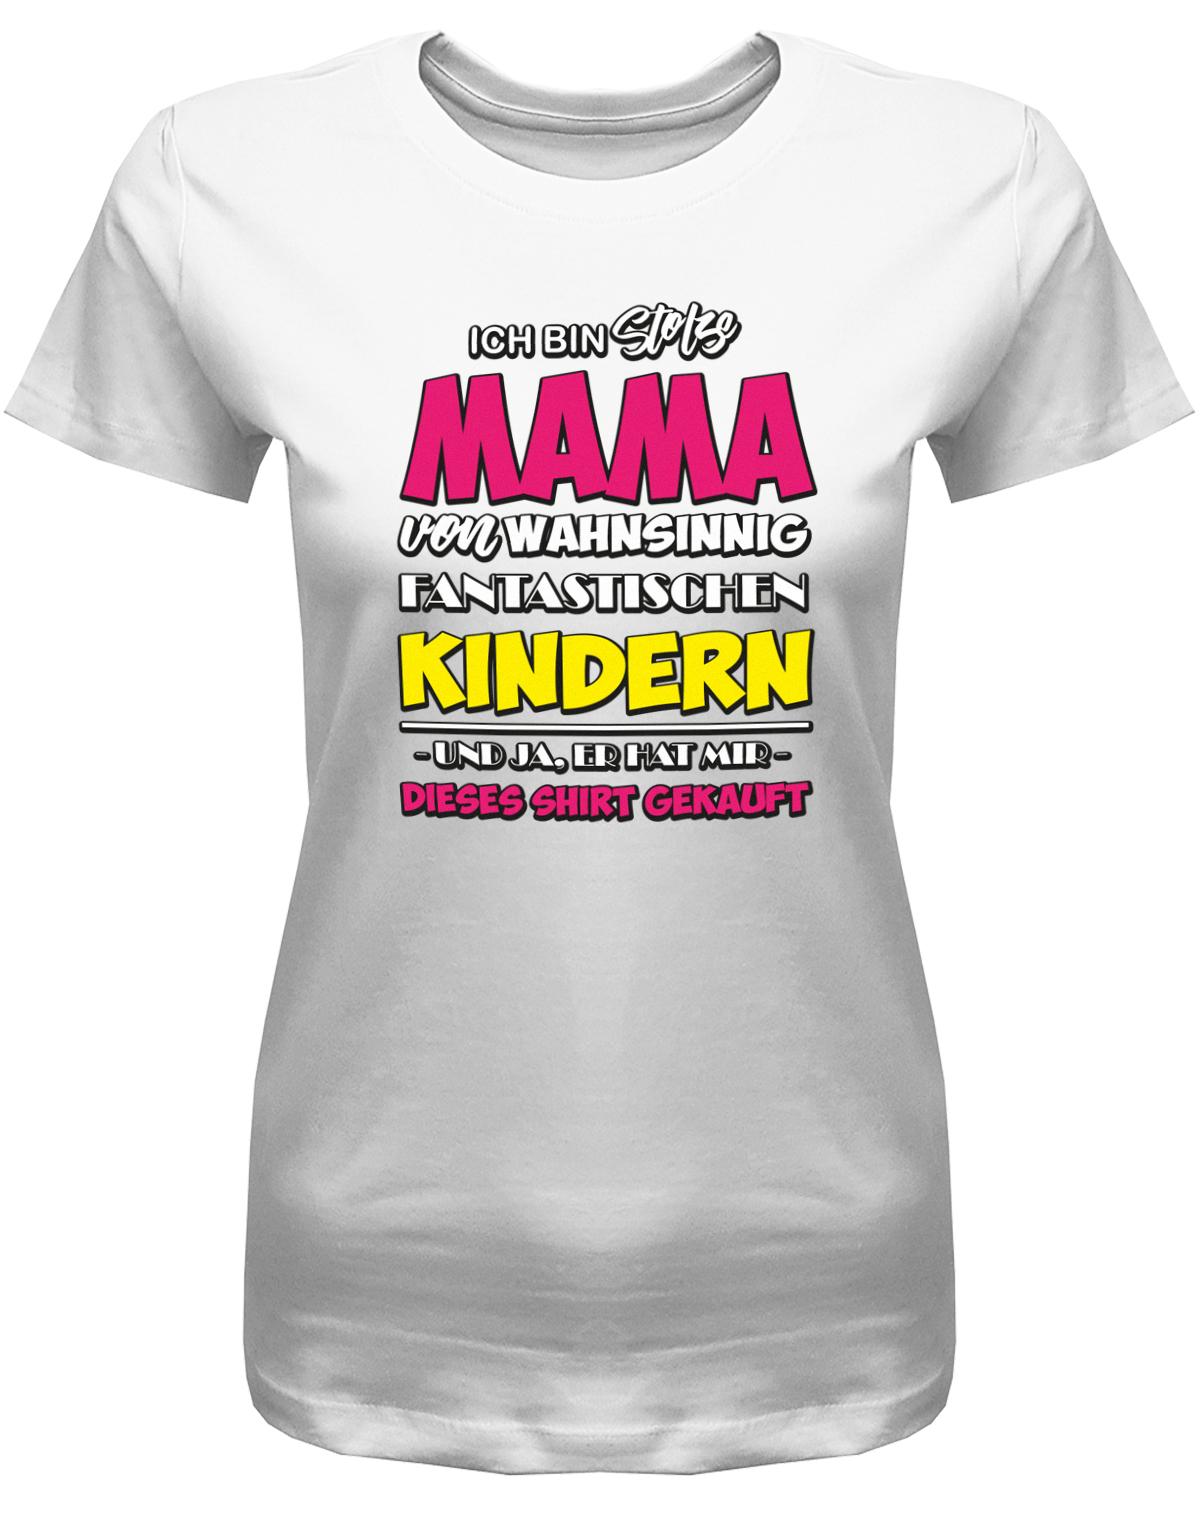 Ich-bin-stolze-mama-von-Wahnsinning-Fantastischen-Kindern-Damen-Shirt-Weiss